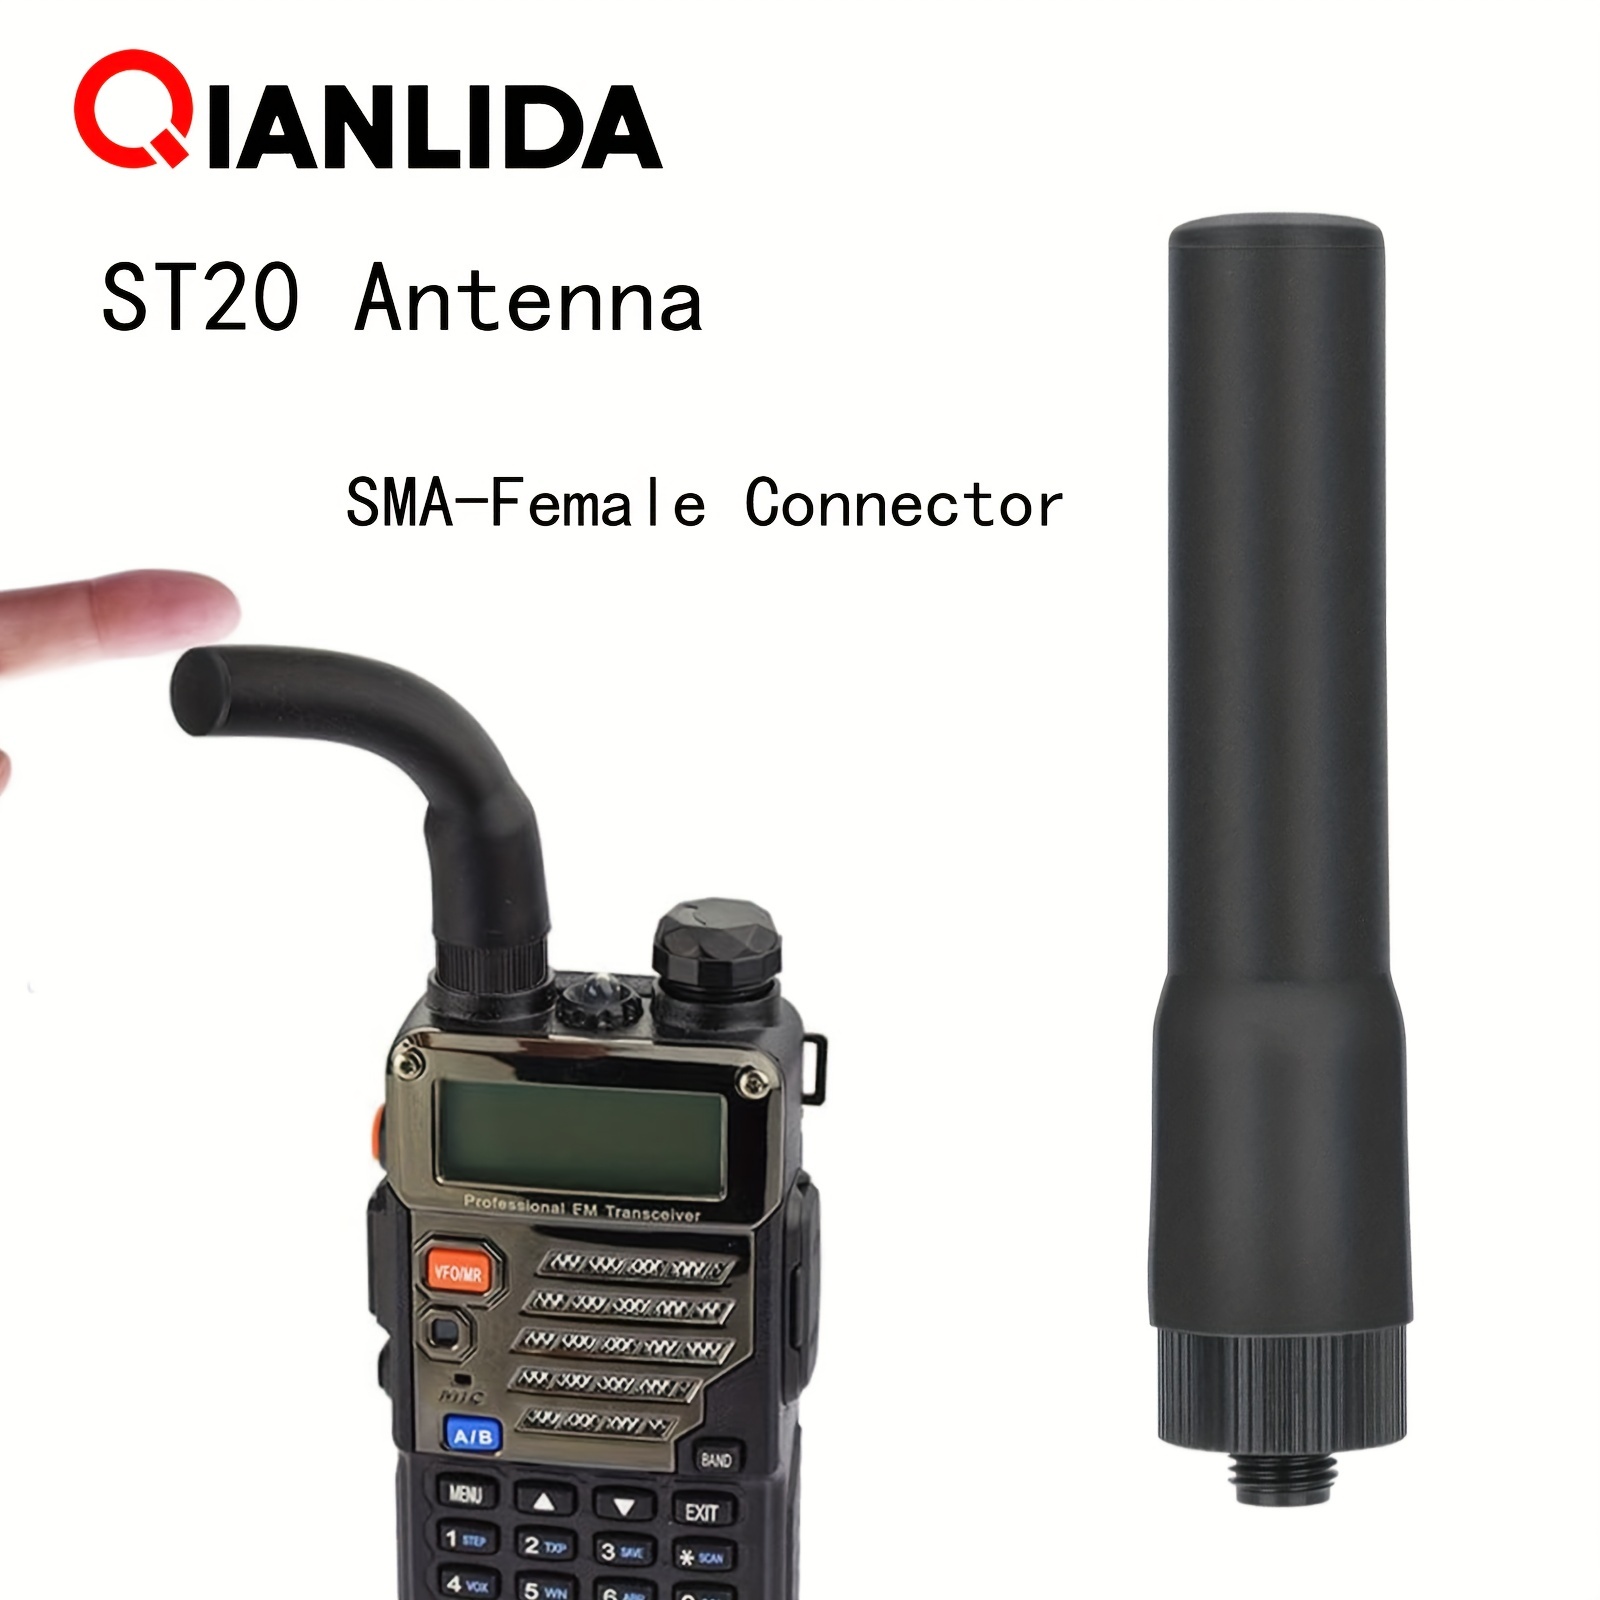  Hama Antena de coche para DAB/DAB +, antena flexible AM/FM para  recepción de radio digital, conector SMB de banda III L (F), amplificada  electrónicamente, activa, antena de coche de 12 V 